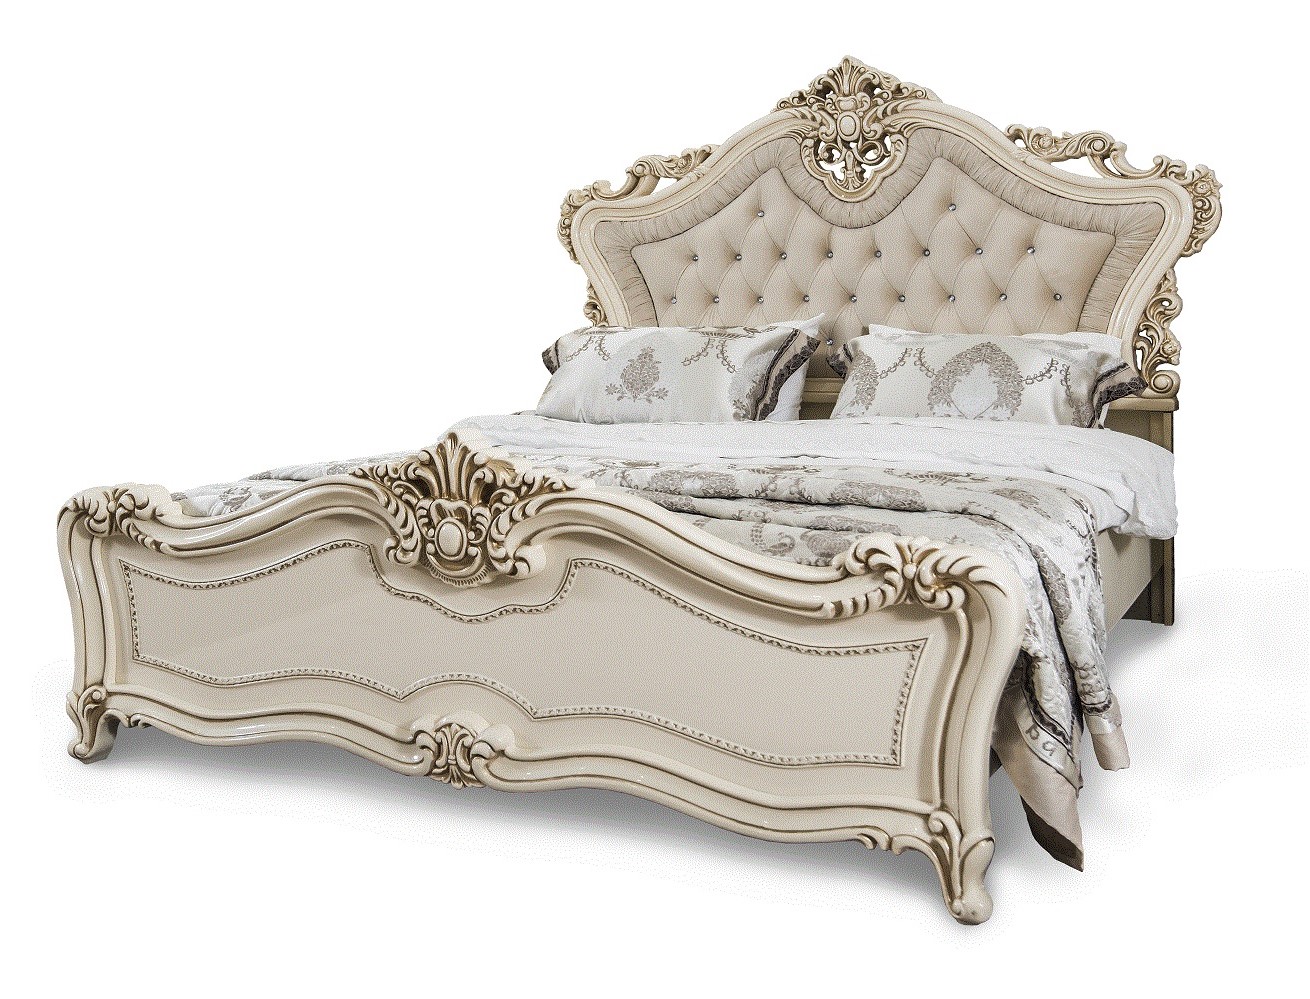 Кровать Джоконда Фото